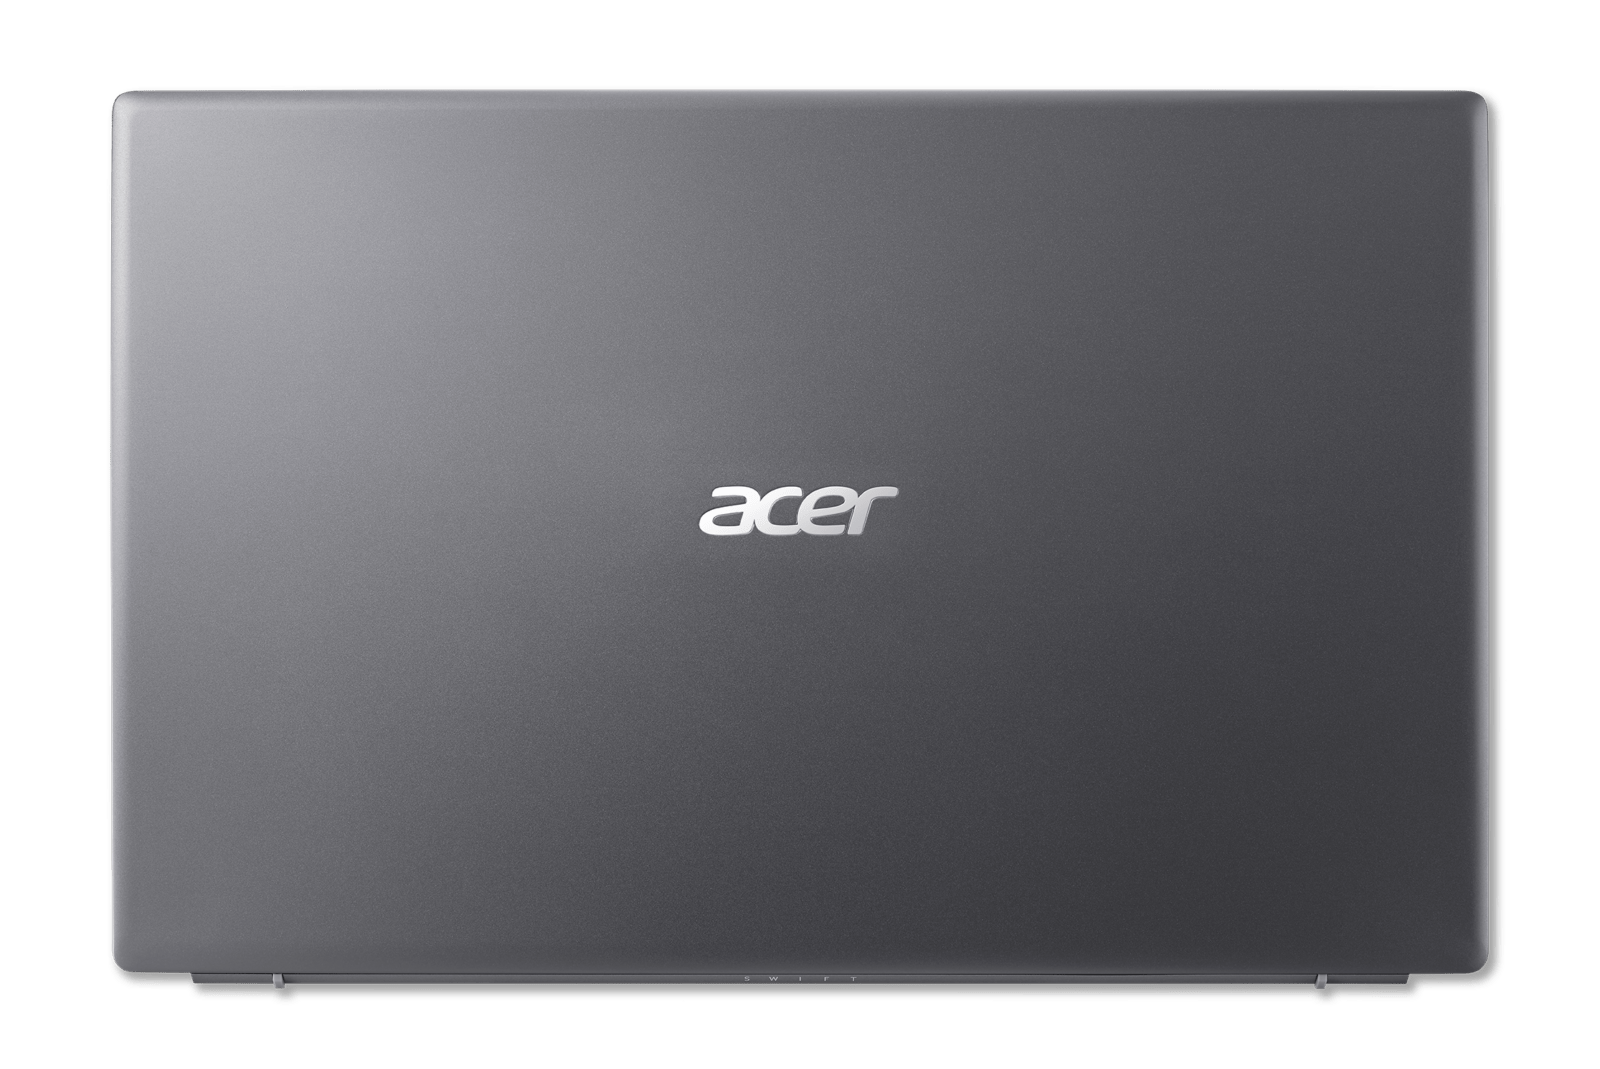 Acer представила новый легкий и производительный ноутбук Swift 3 (Swift 3 SF316 51 FpBl Sg 06)